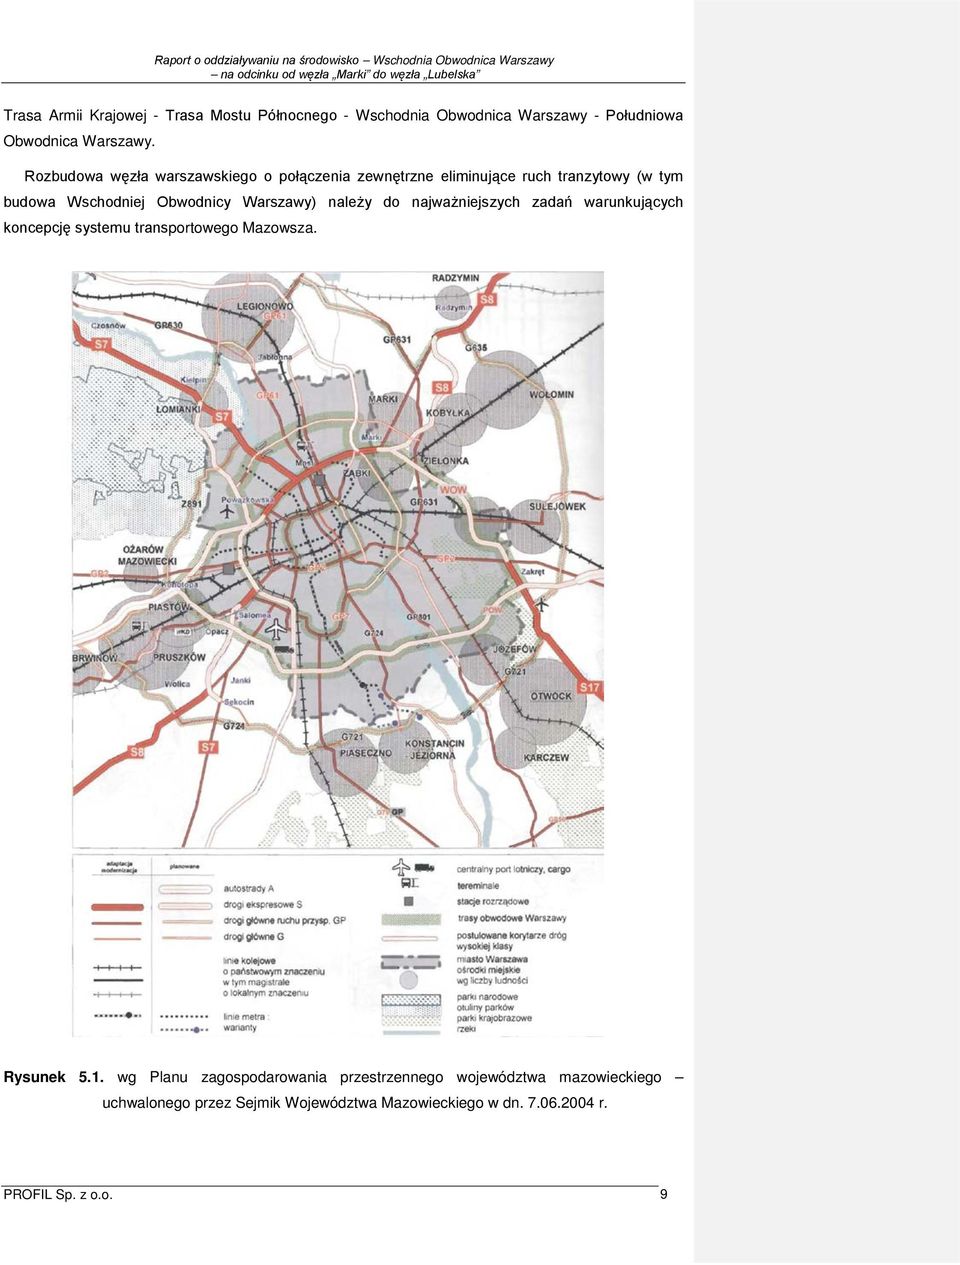 Warszawy) należy do najważniejszych zadań warunkujących koncepcję systemu transportowego Mazowsza. Rysunek 5.1.